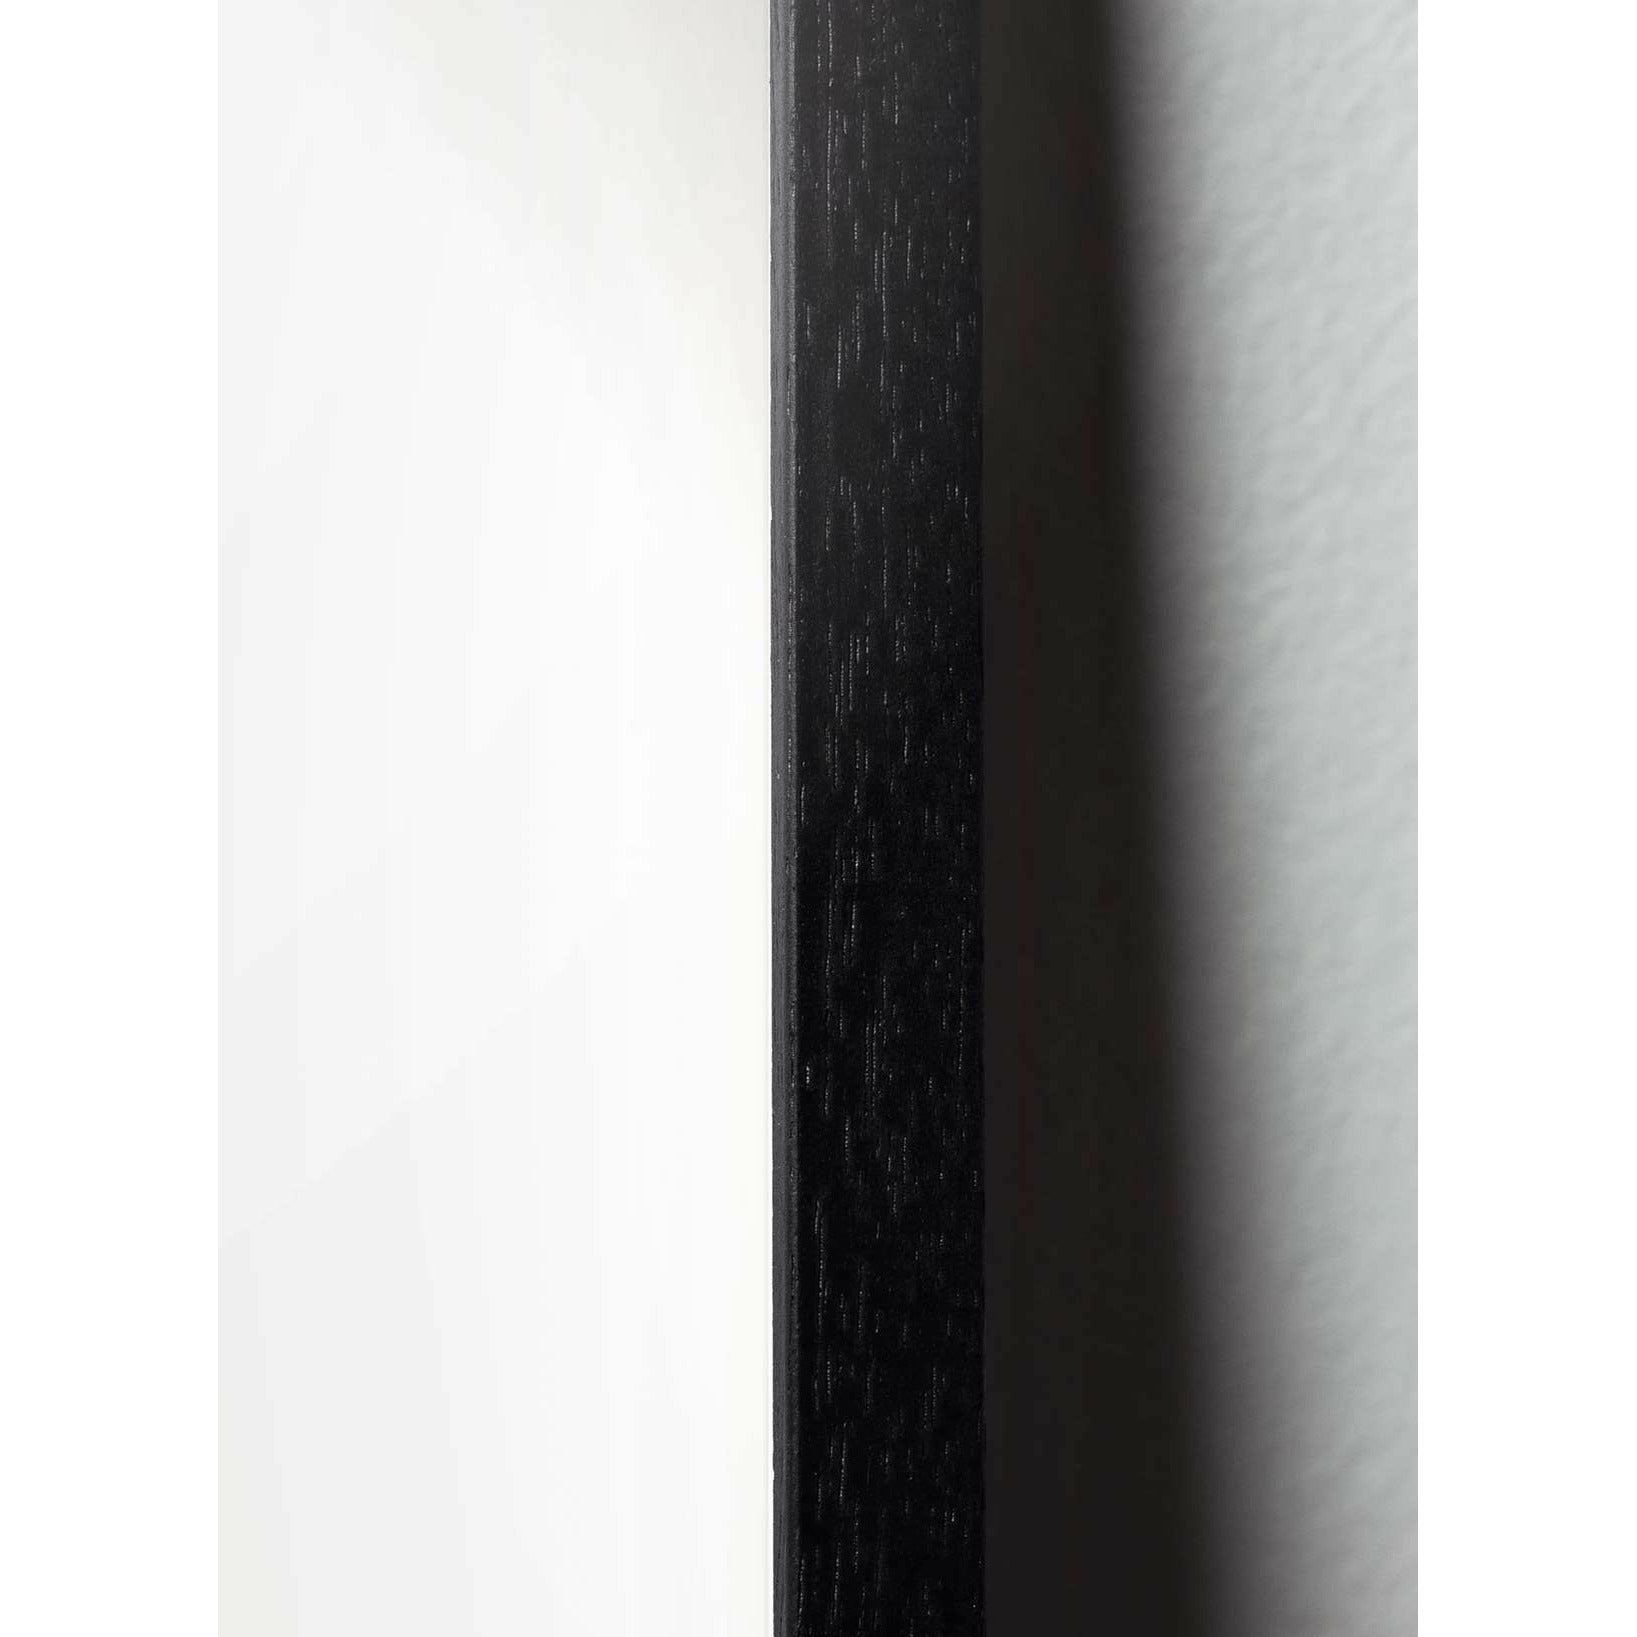 Brainchild Affiche de l'icône de conception de fourmi, cadre en bois de laqué noir 50 x70 cm, gris